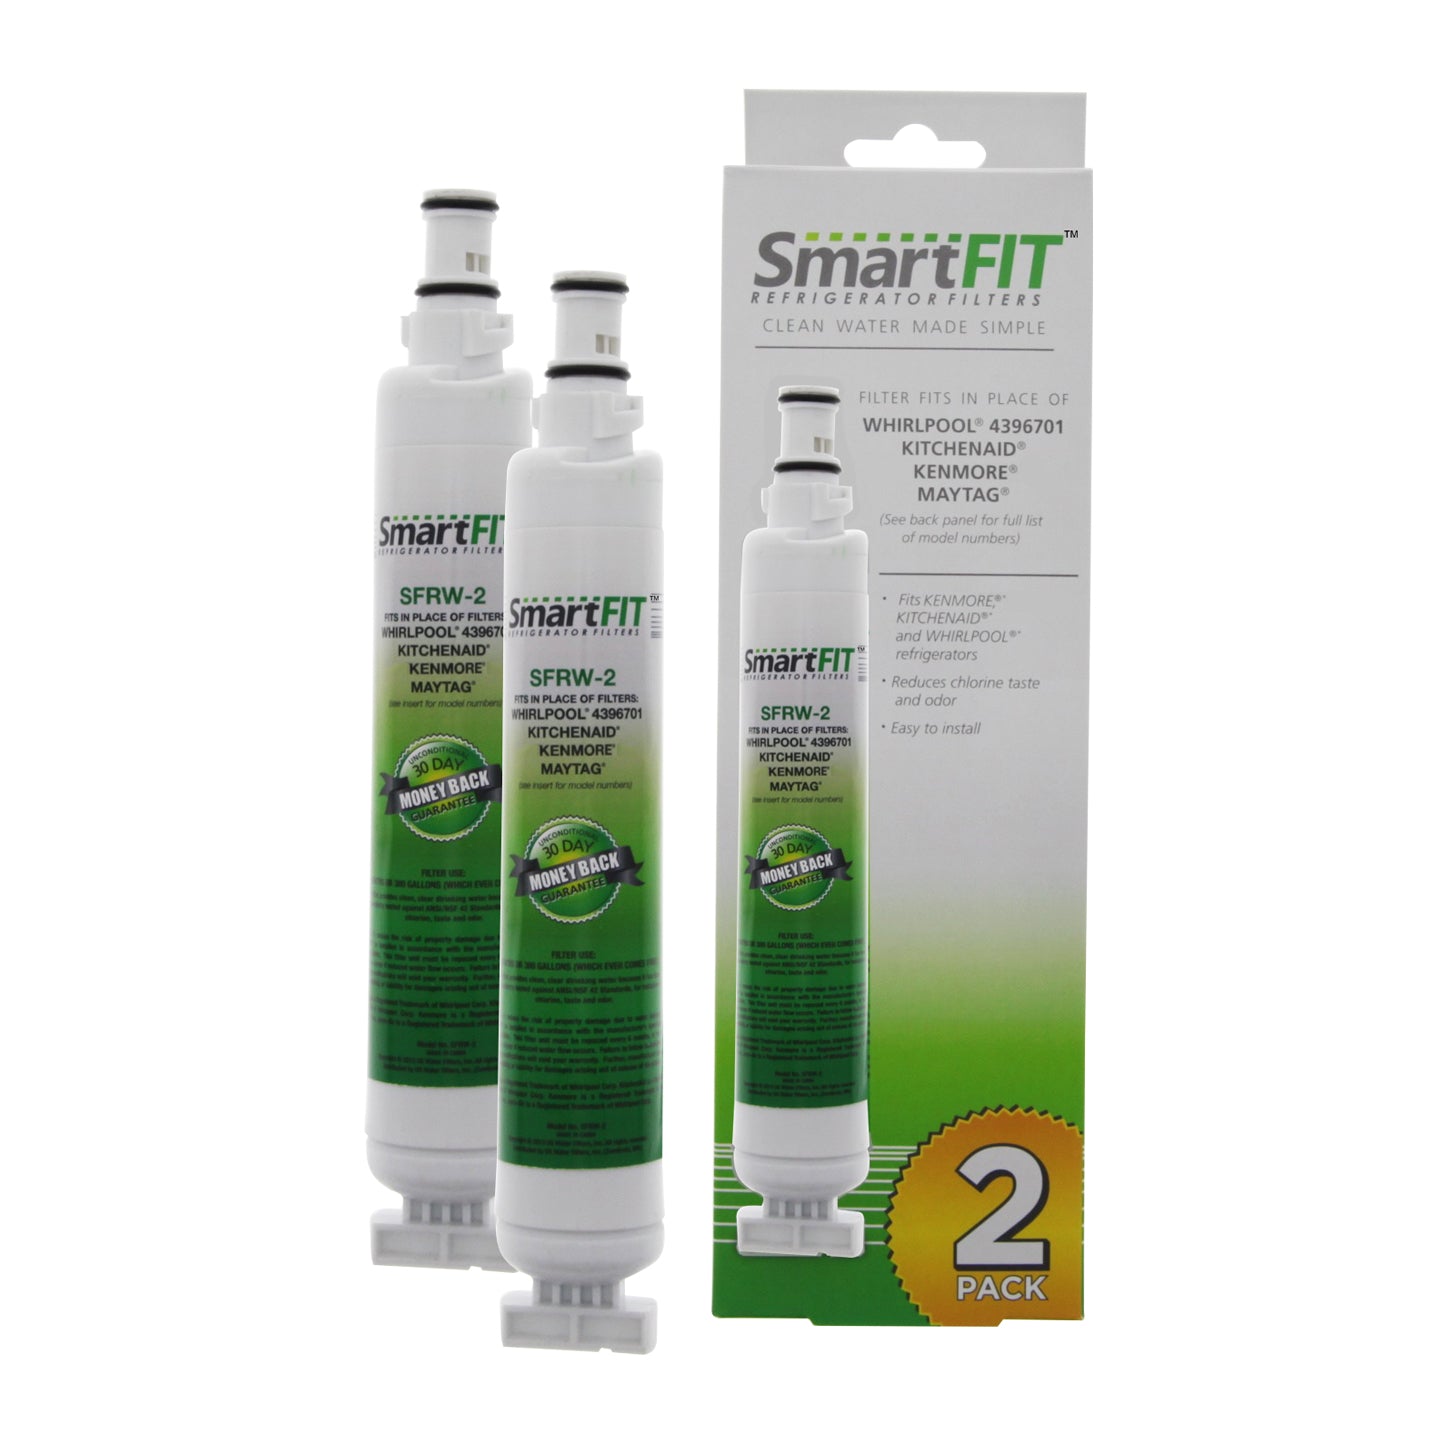 SmartFit Refrigerator Filters - Water Filter; 4396701 2PK